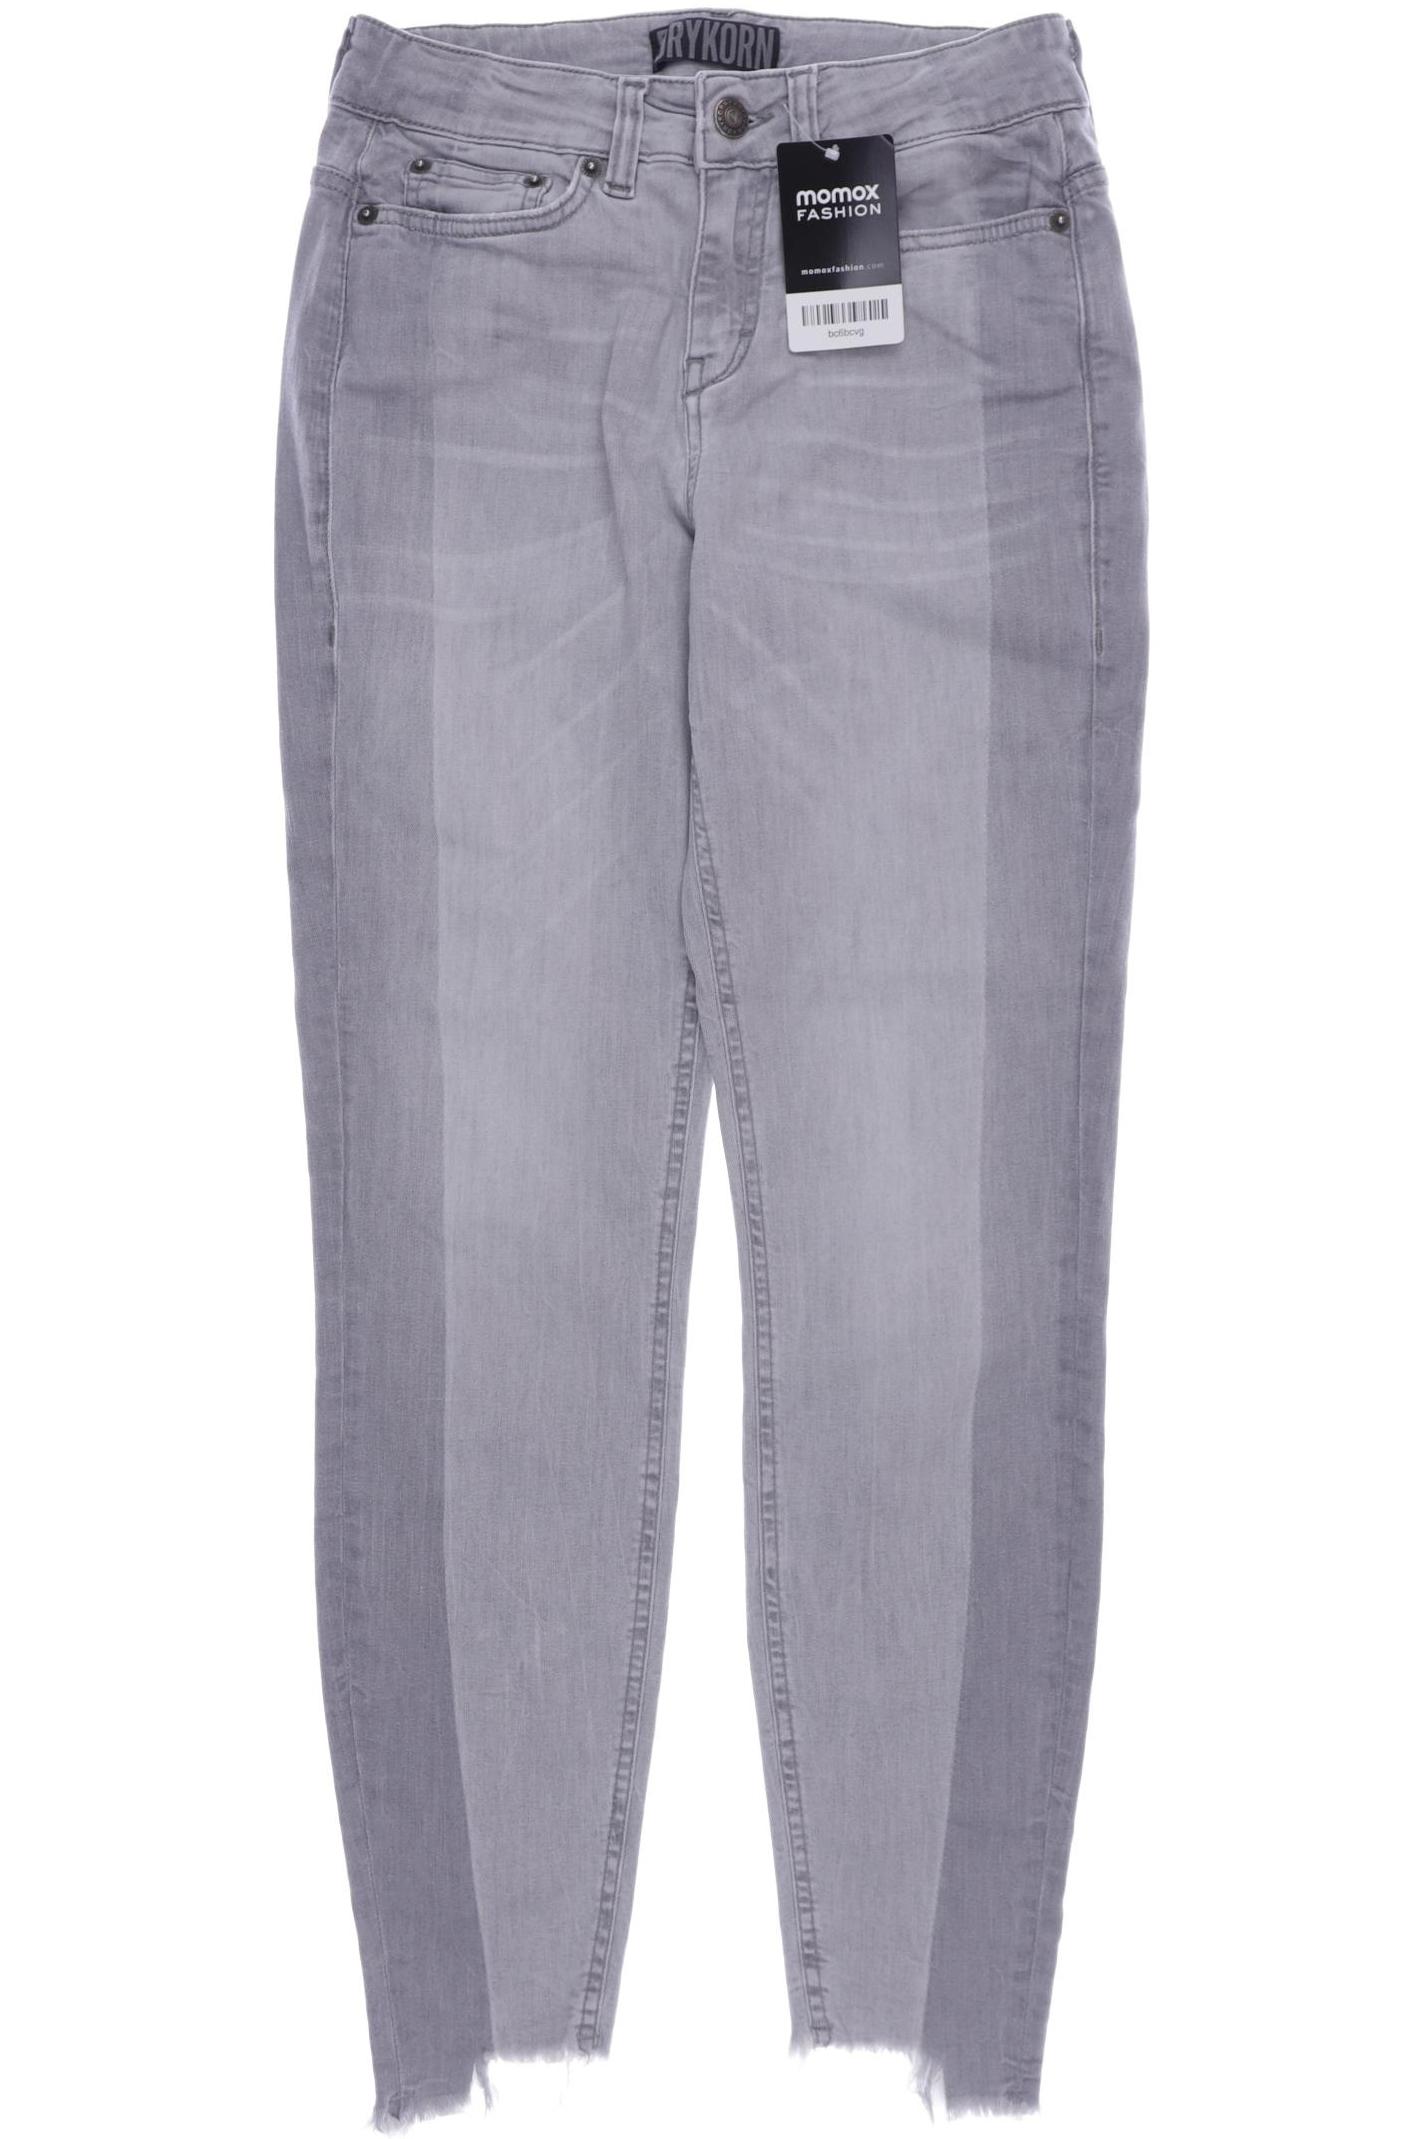 Drykorn Damen Jeans, grau, Gr. 36 von drykorn